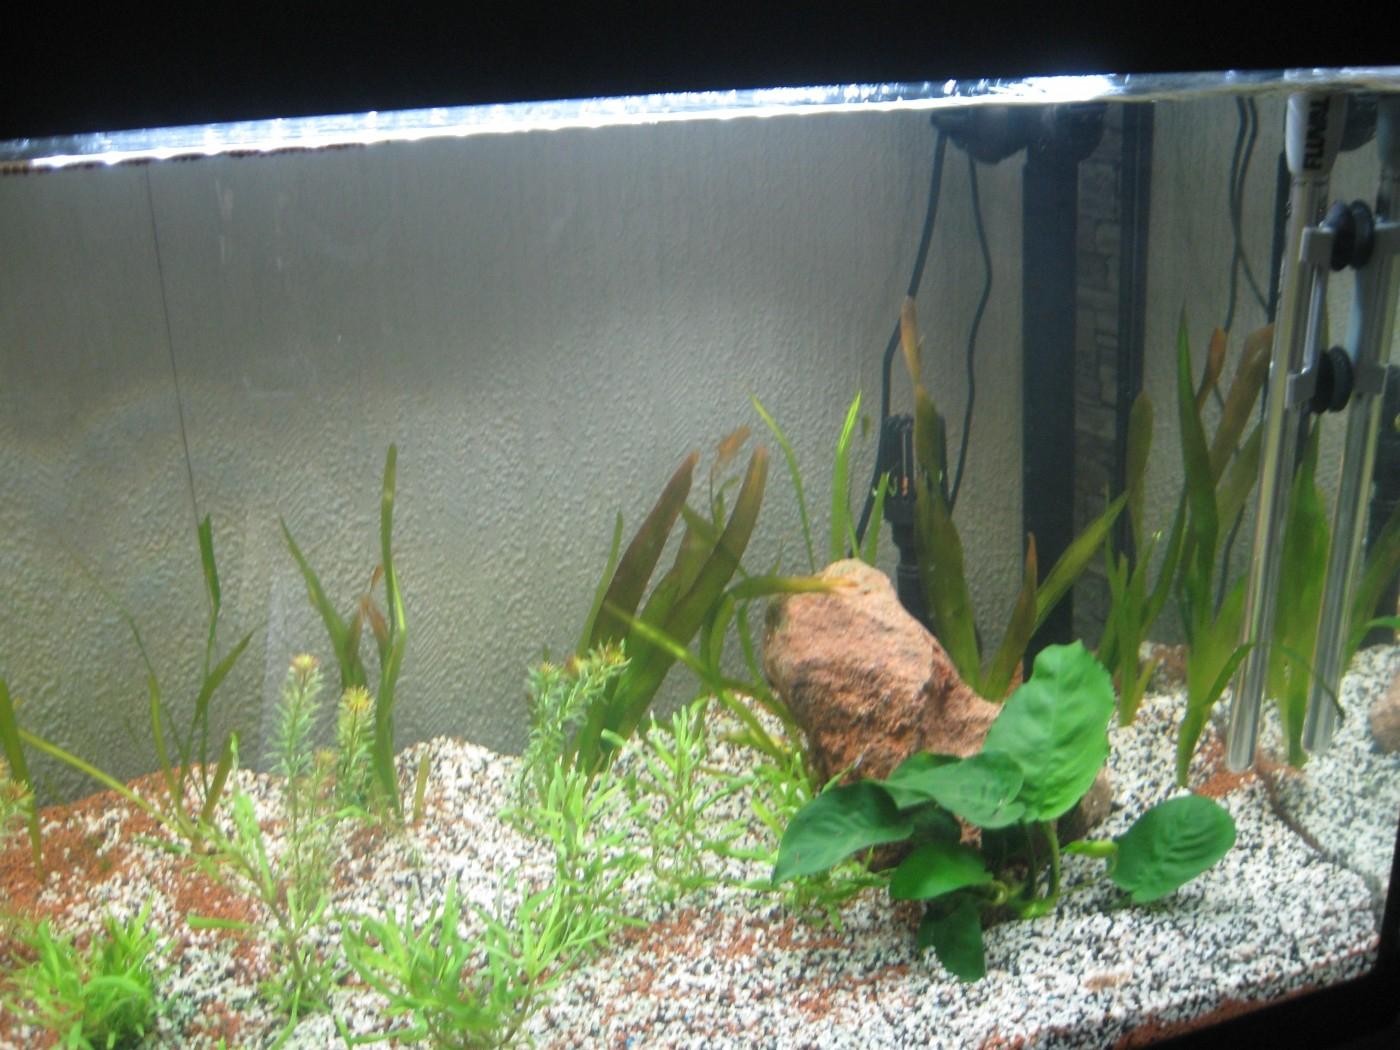 Substrat de sol pour aquarium Manado. Le sac de 10 litres : JBL